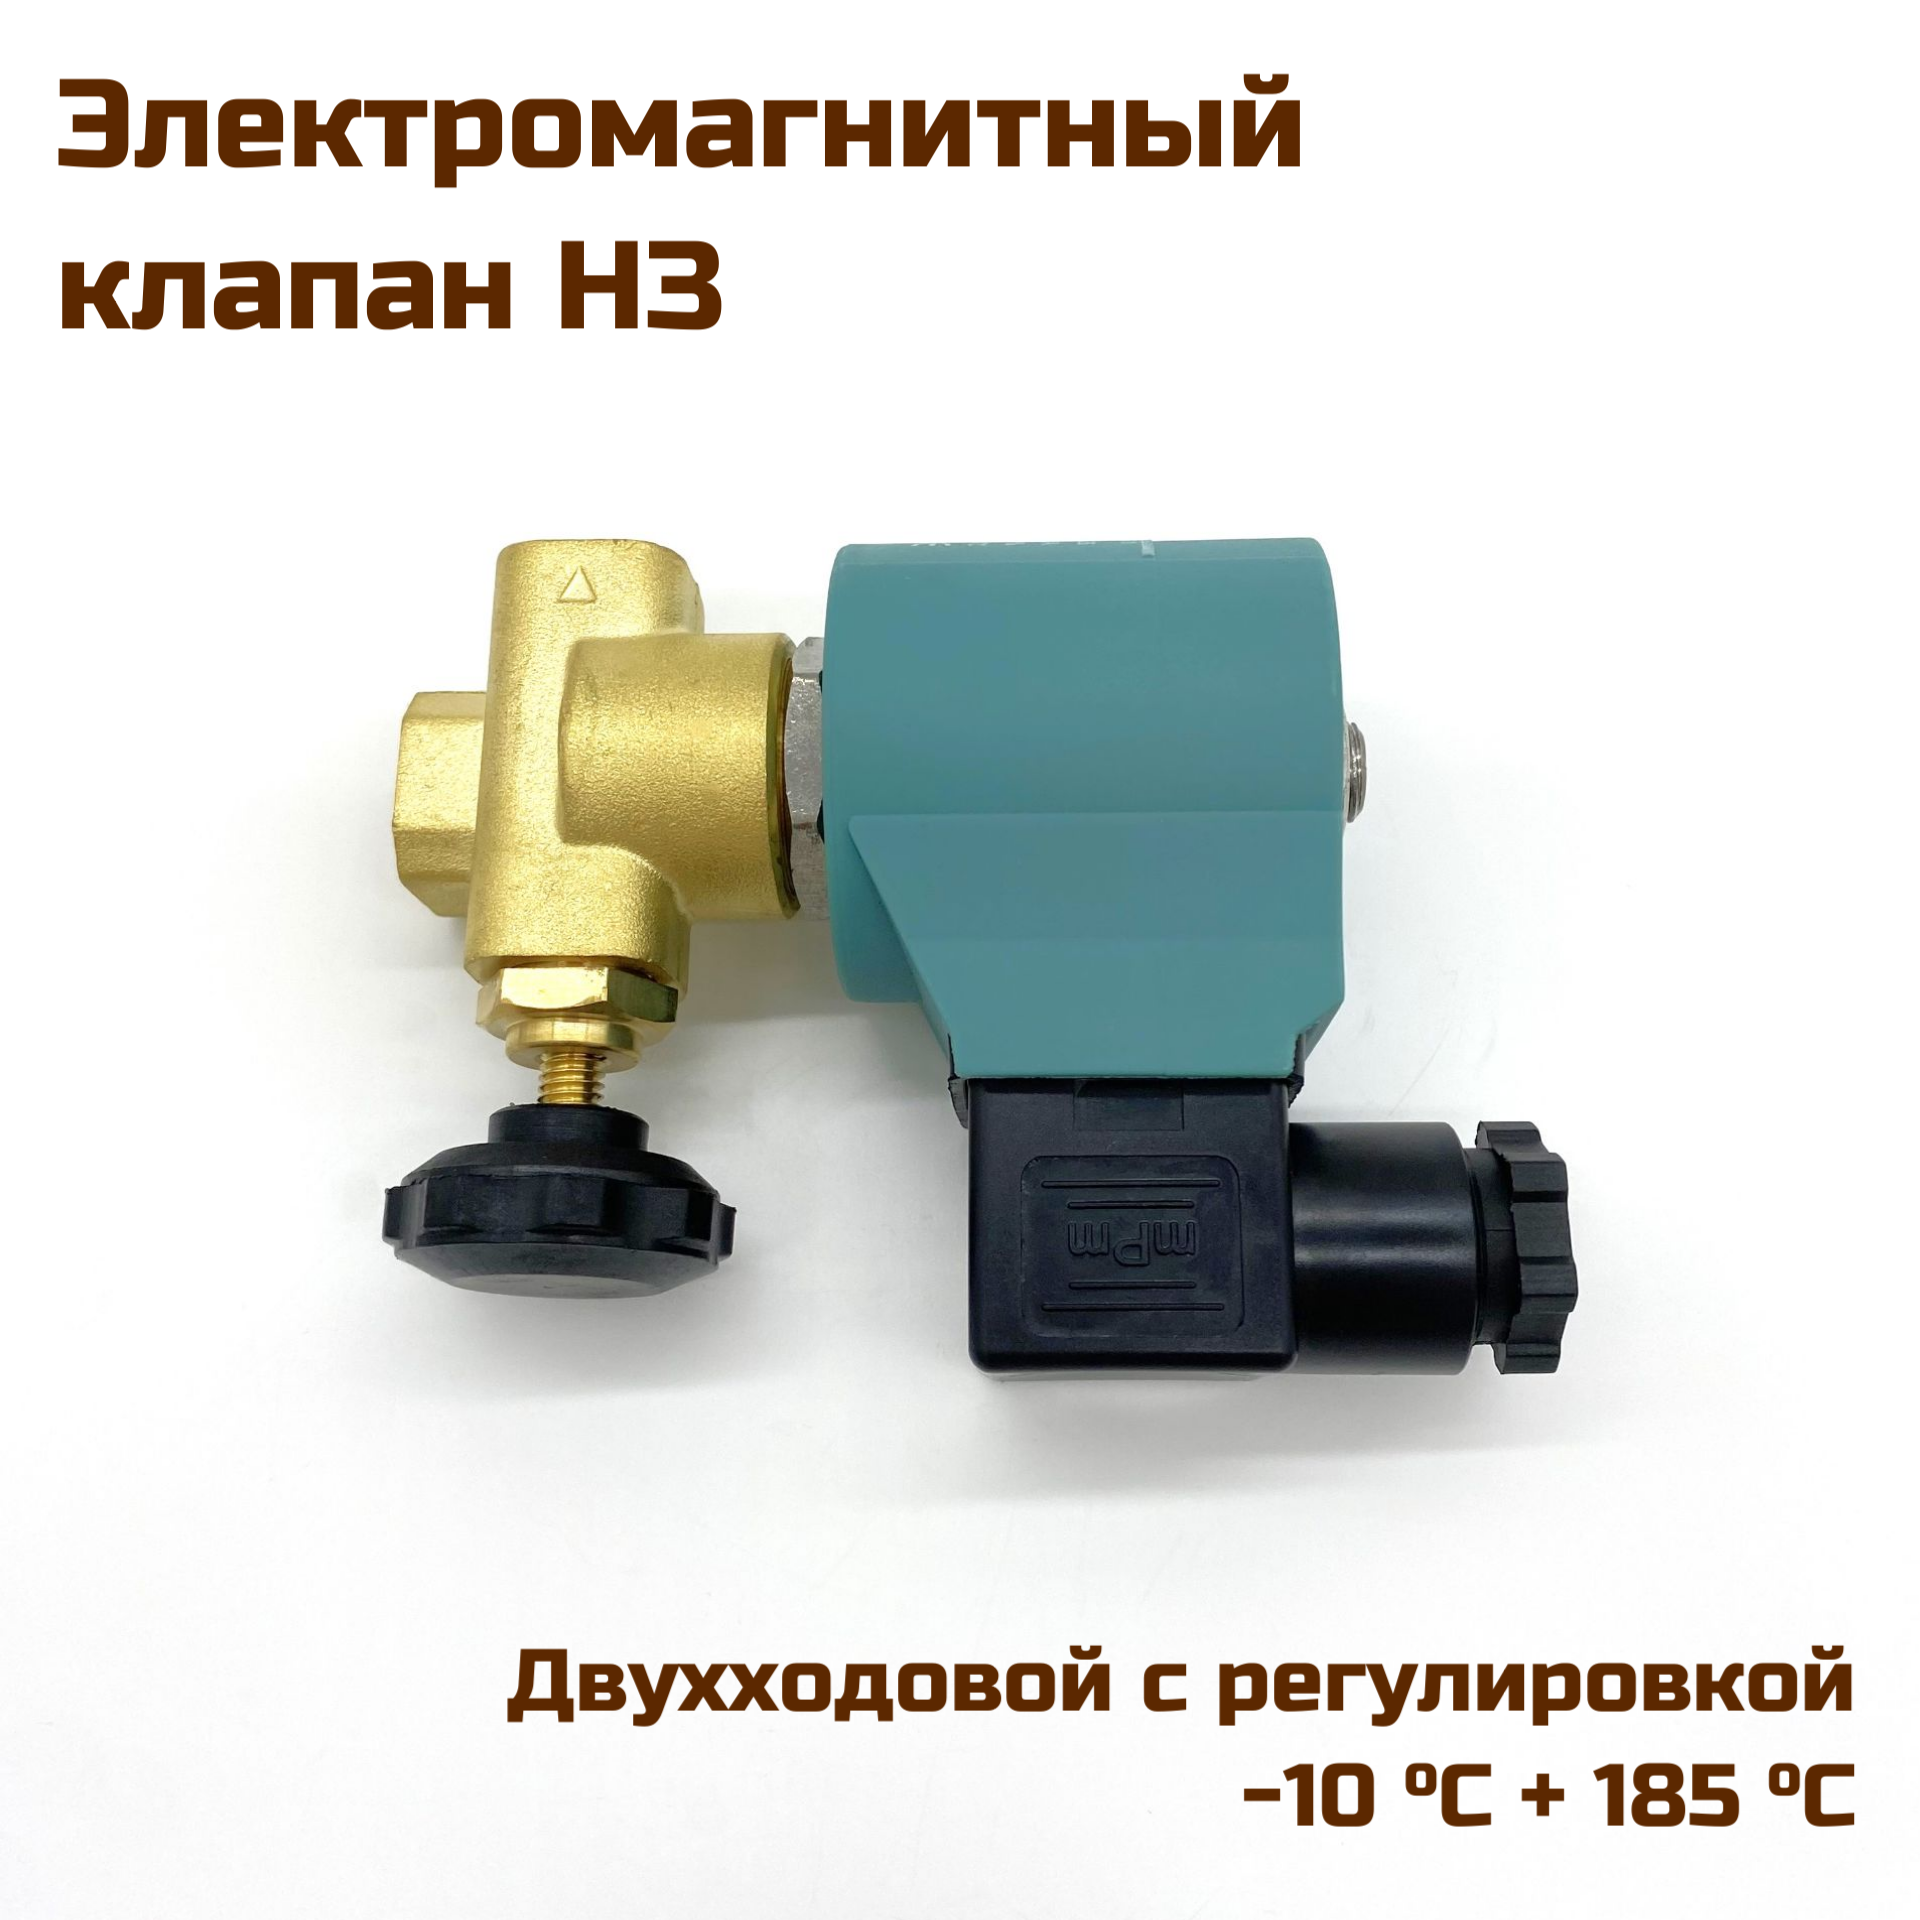 Электромагнитный (соленоидный) двухходовой клапан с регулировкой для подачи пара НЗ G1/4 185°C 230V